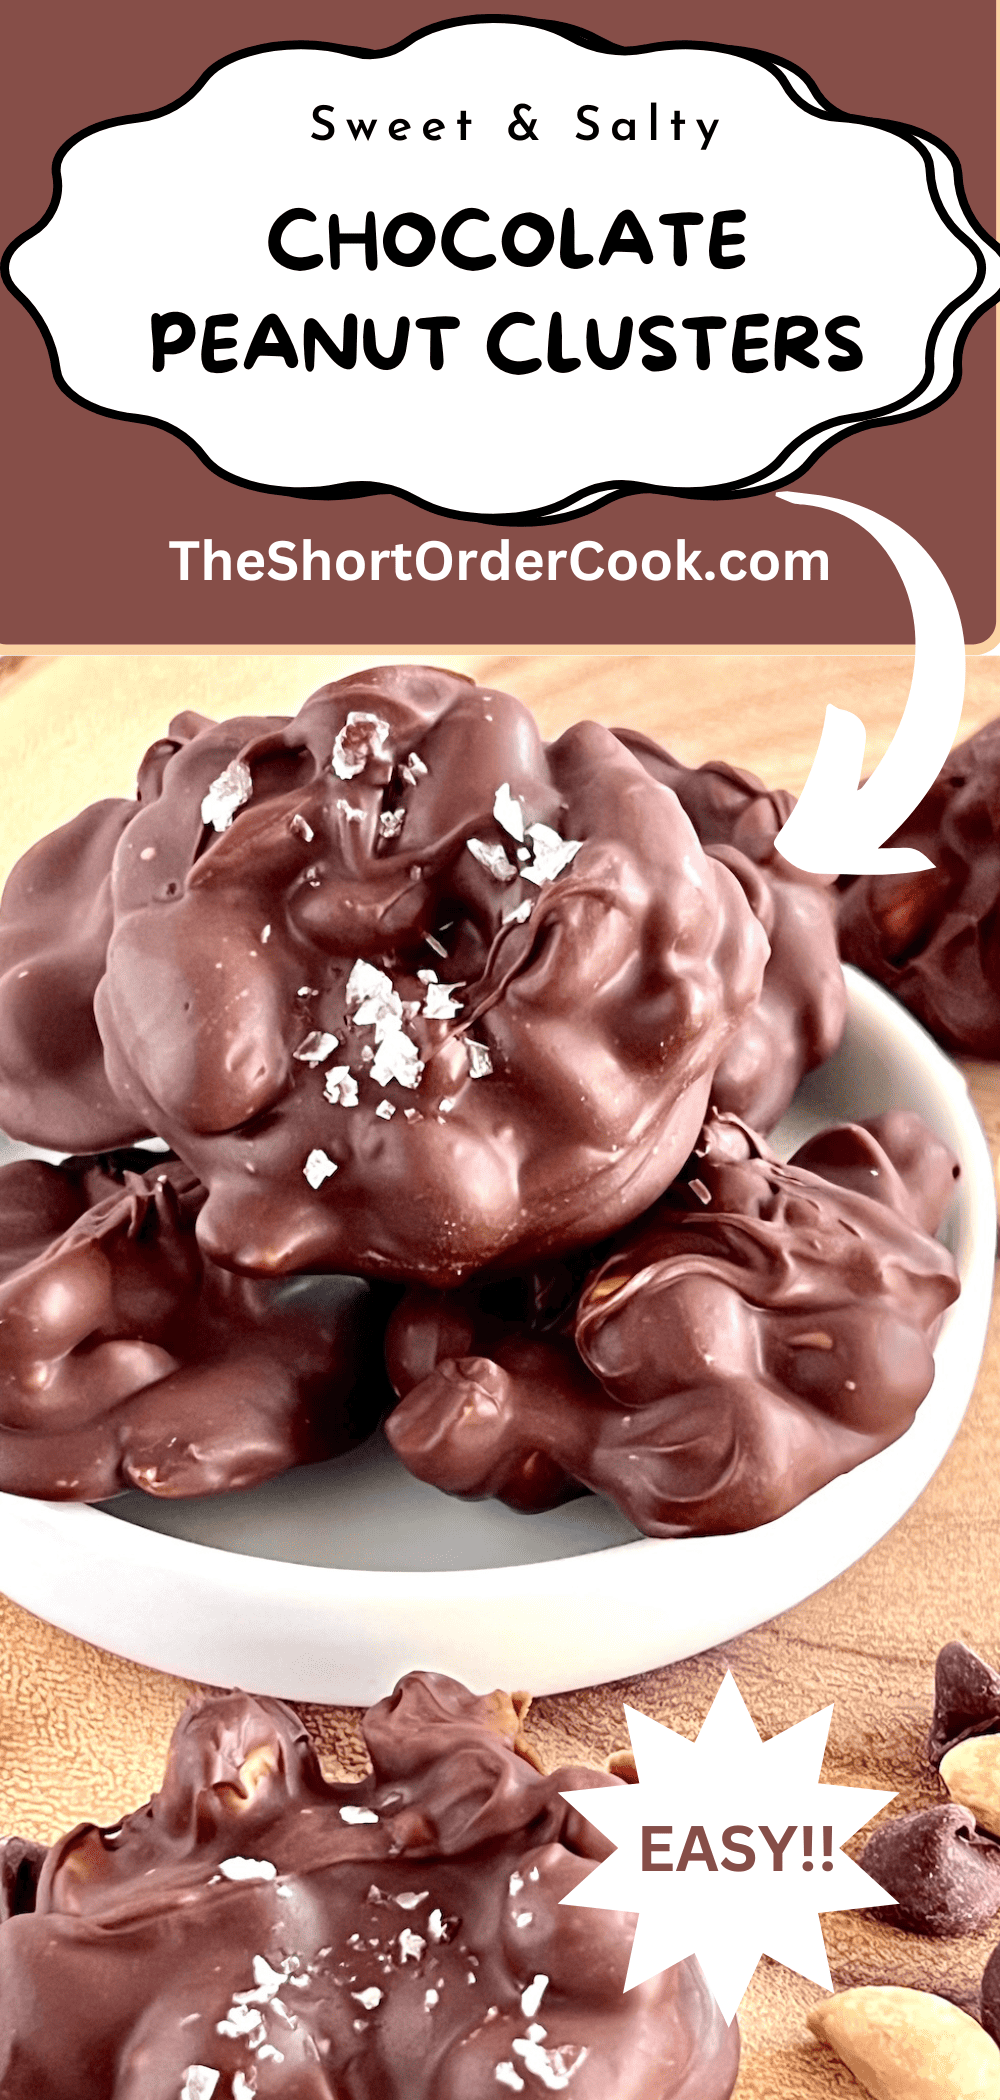 Chocolate Peanut Clusters with sea salt. 